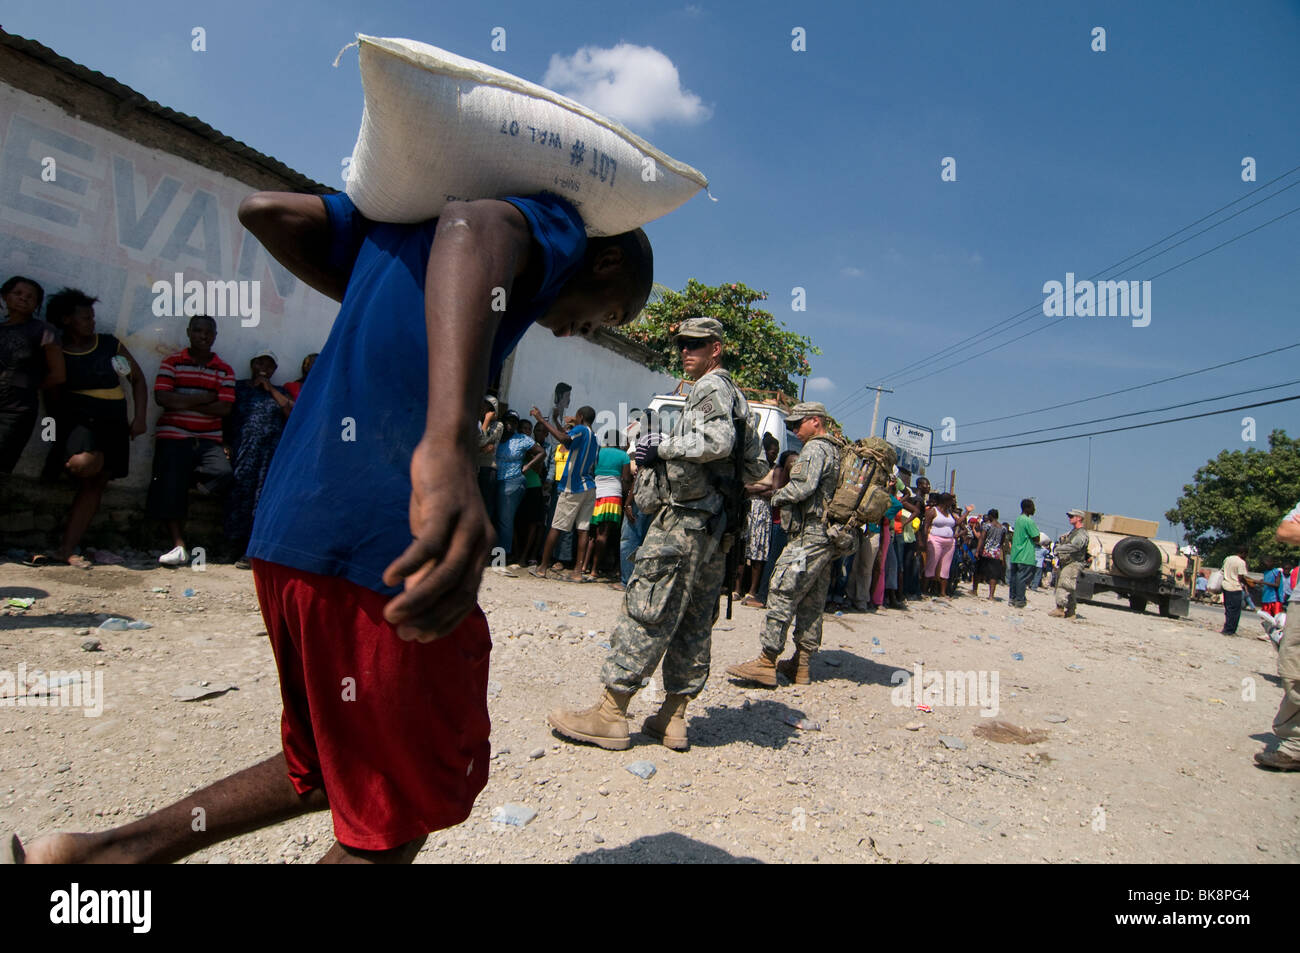 US Marine soldati di guardia durante la distribuzione del cibo nel centro cittadino di Port au Prince dopo un terremoto di magnitudine 7.0 ha colpito Haiti il 12 gennaio 2010 Foto Stock